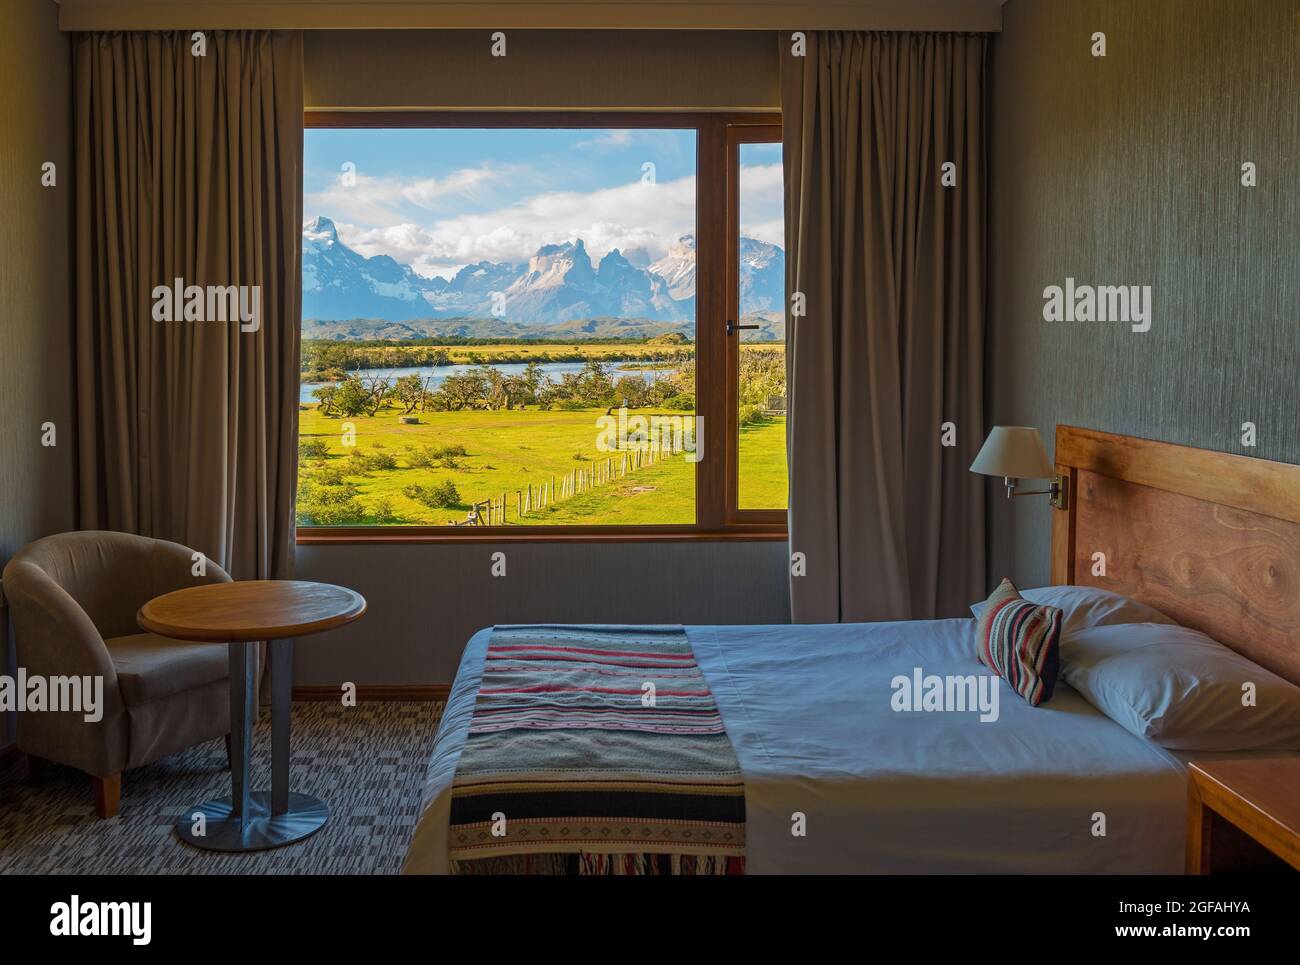 Chambre d'hôtel au design classique avec rideaux ouverts et vue sur Cuernos del Paine, parc national Torres del Paine, Patagonie, Chili. Banque D'Images